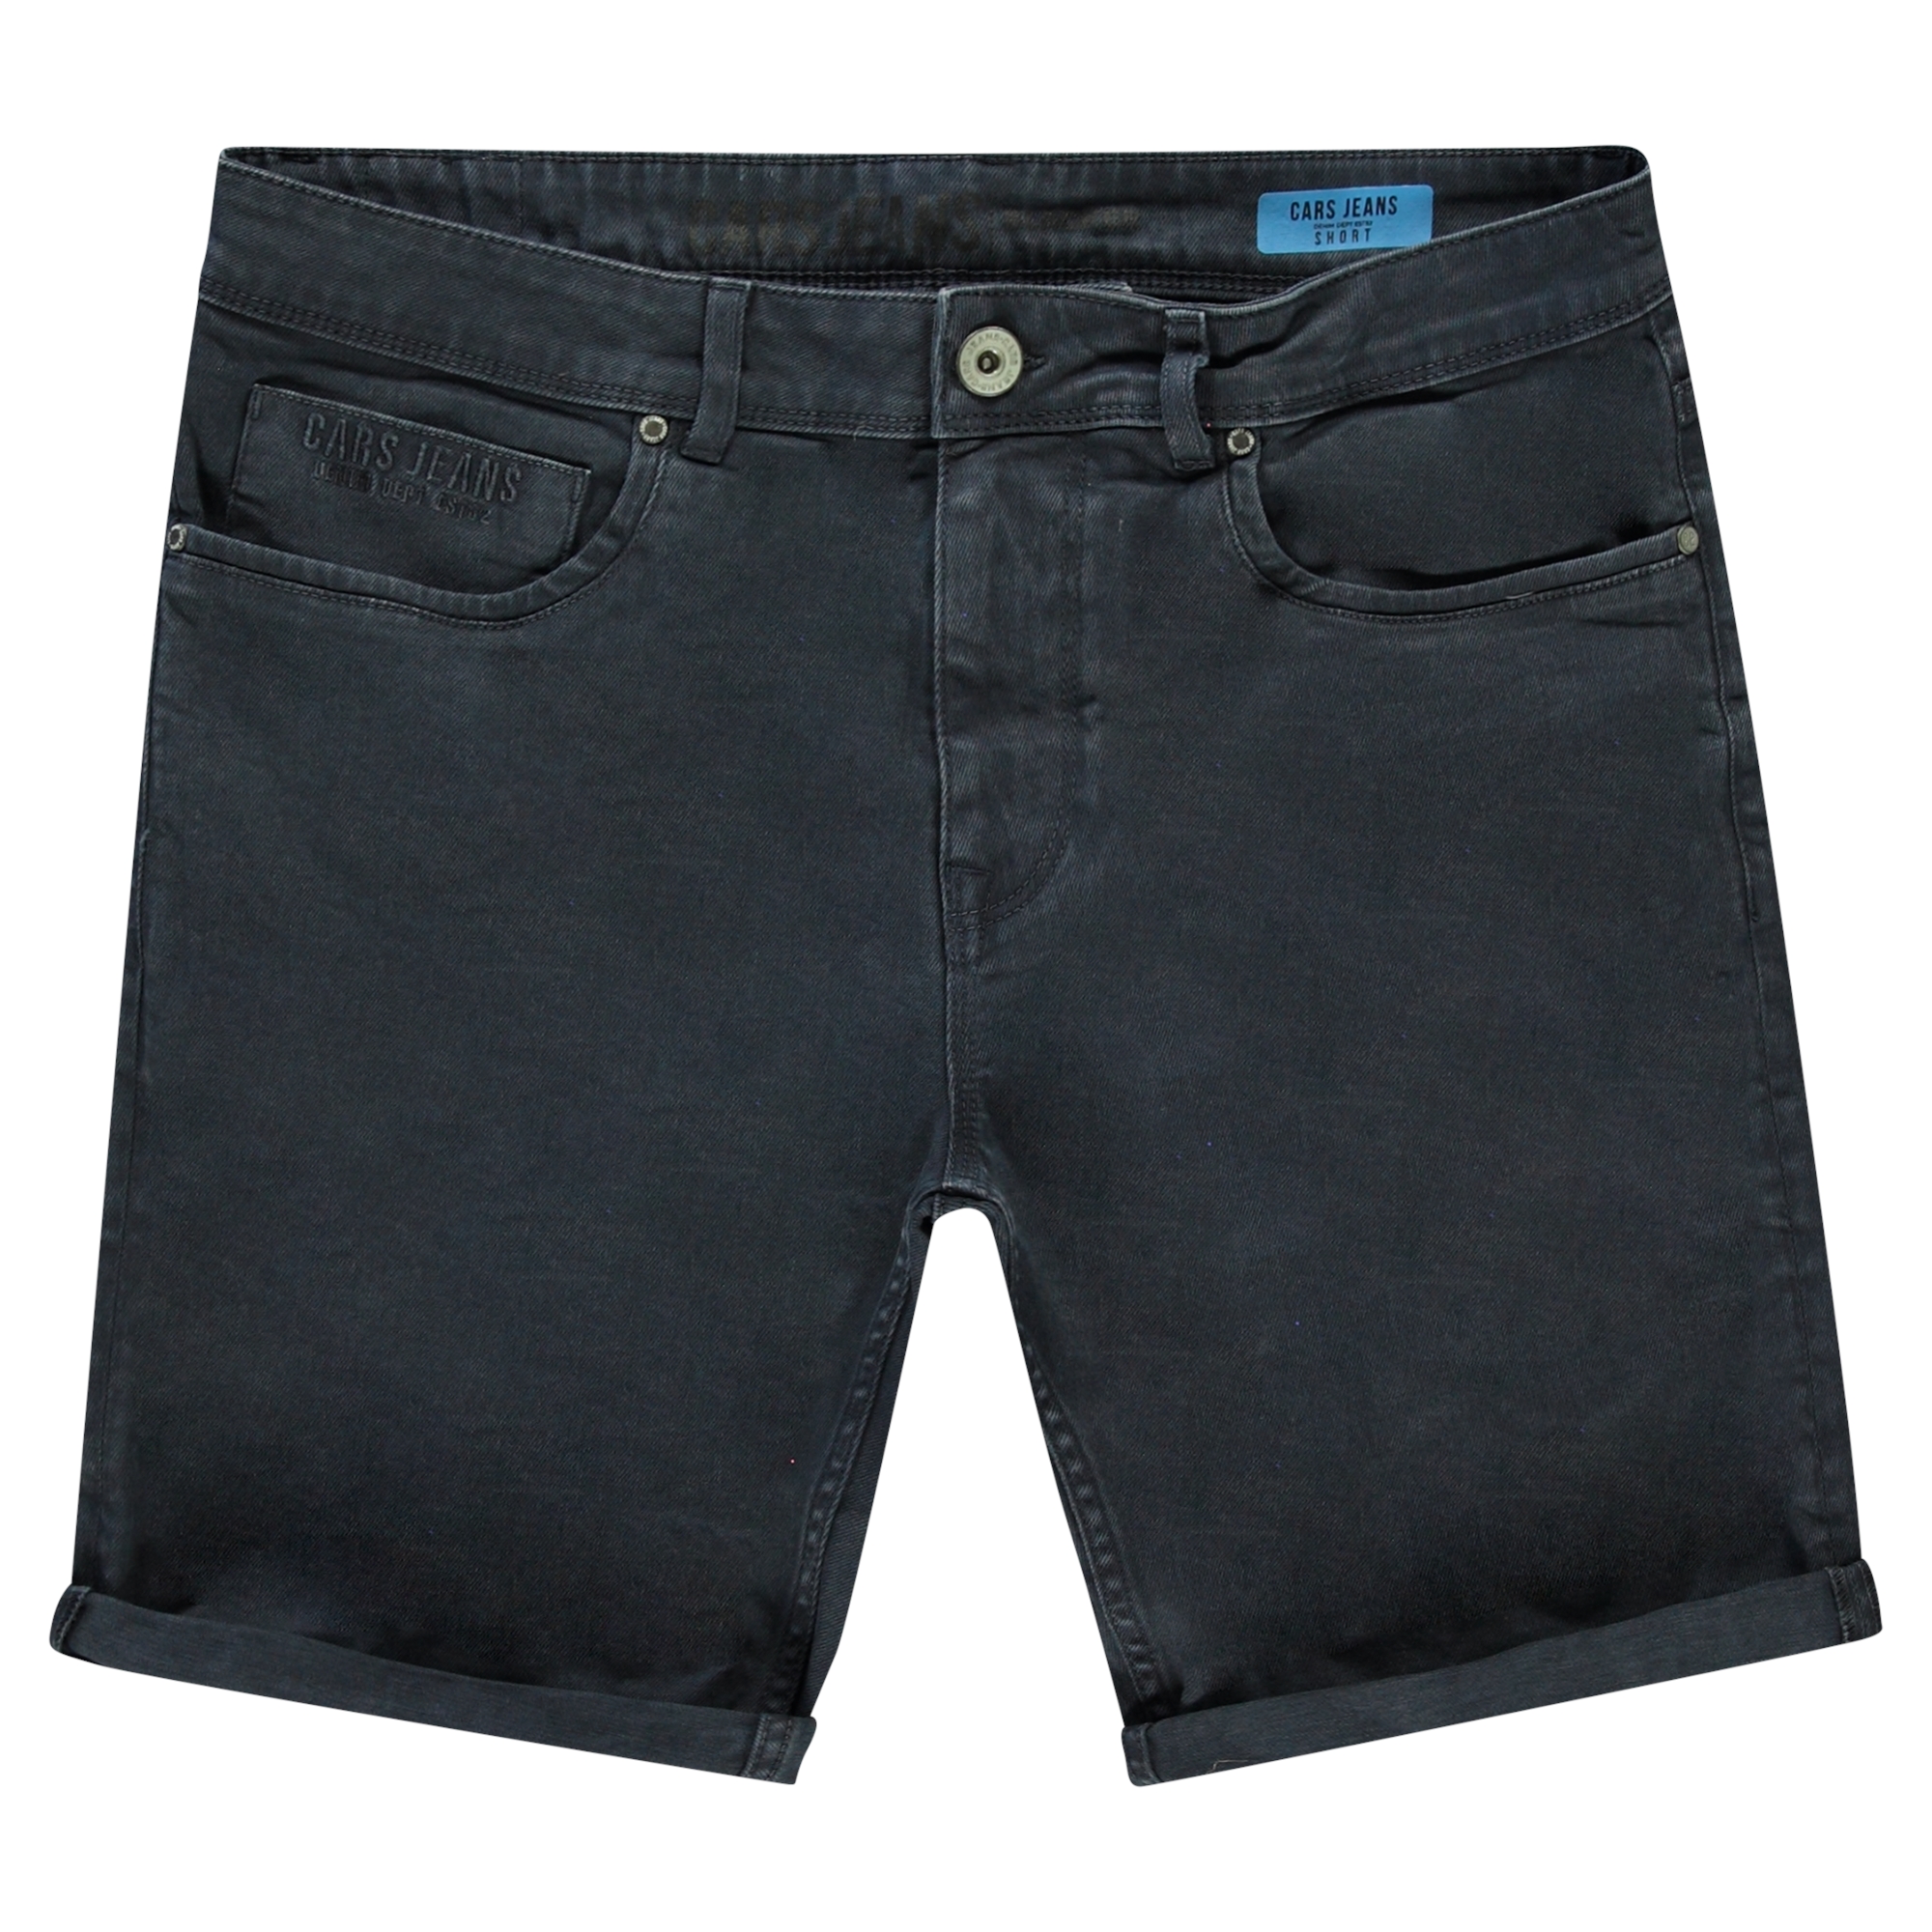 Manie tijdelijk optioneel Cars jeans Heren broek bermuda Direct leverbaar uit de webshop van  www.lots-of-fashion.nl/